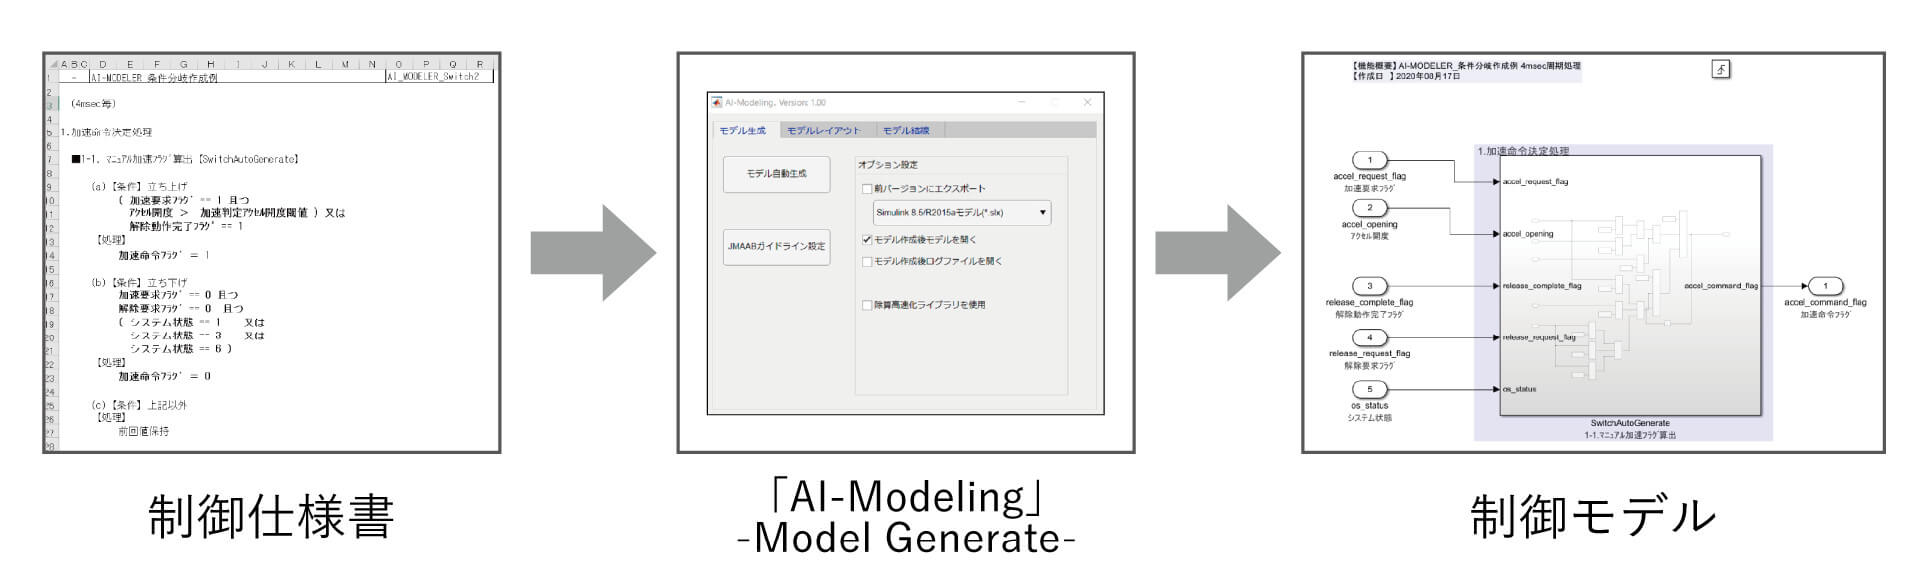 制御モデル自動生成イメージ図